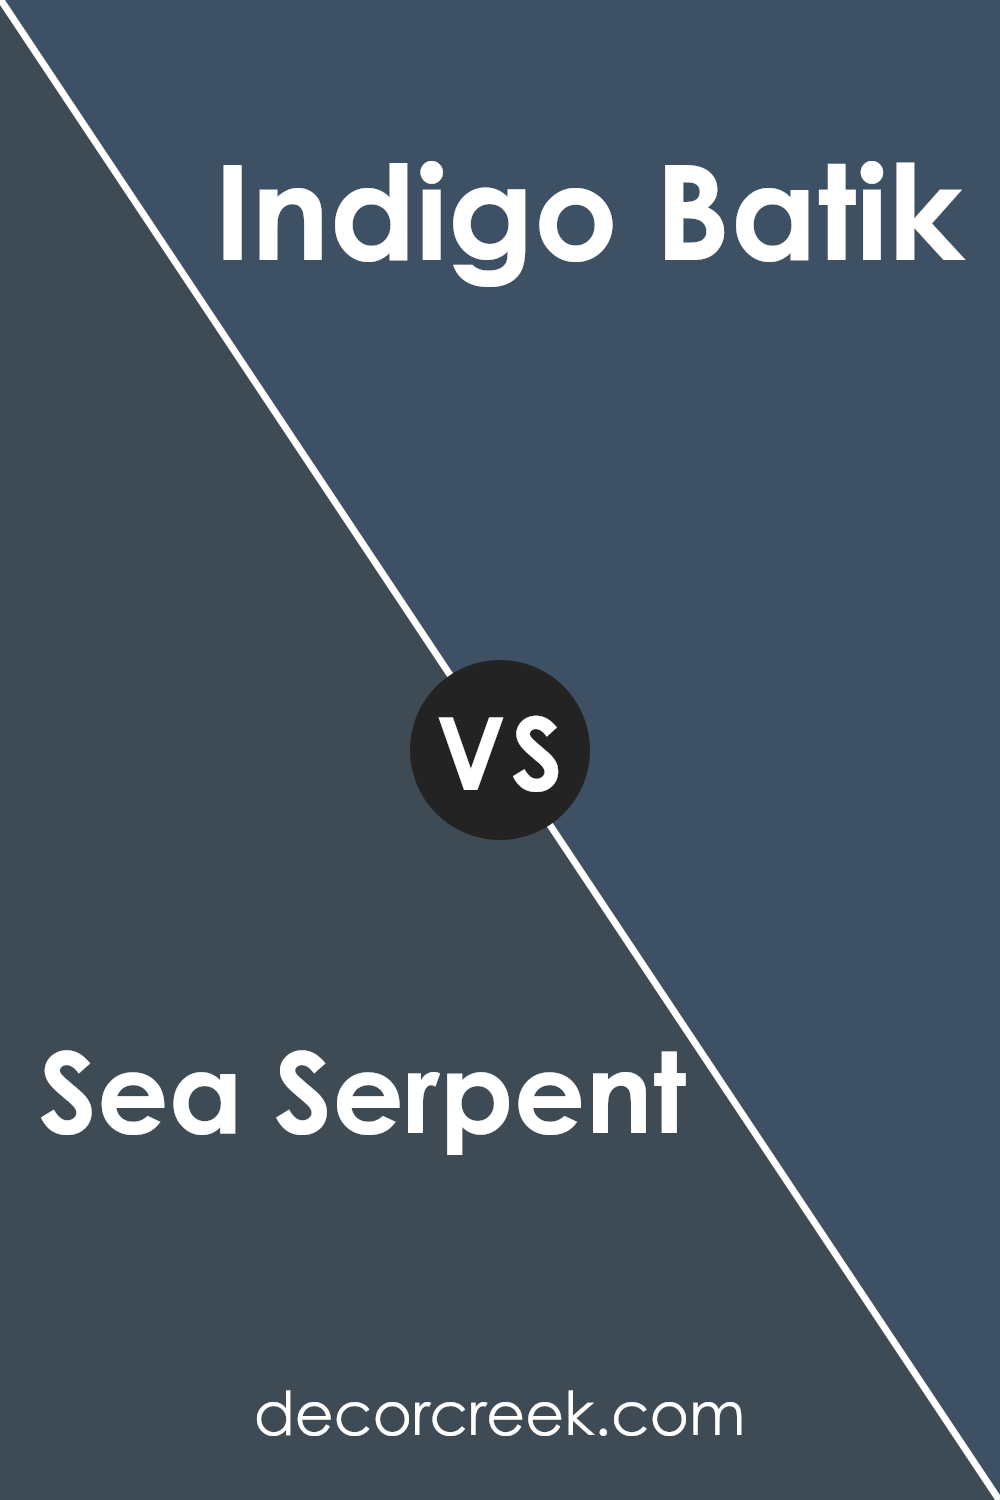 sea_serpent_sw_7615_vs_indigo_batik_sw_7602